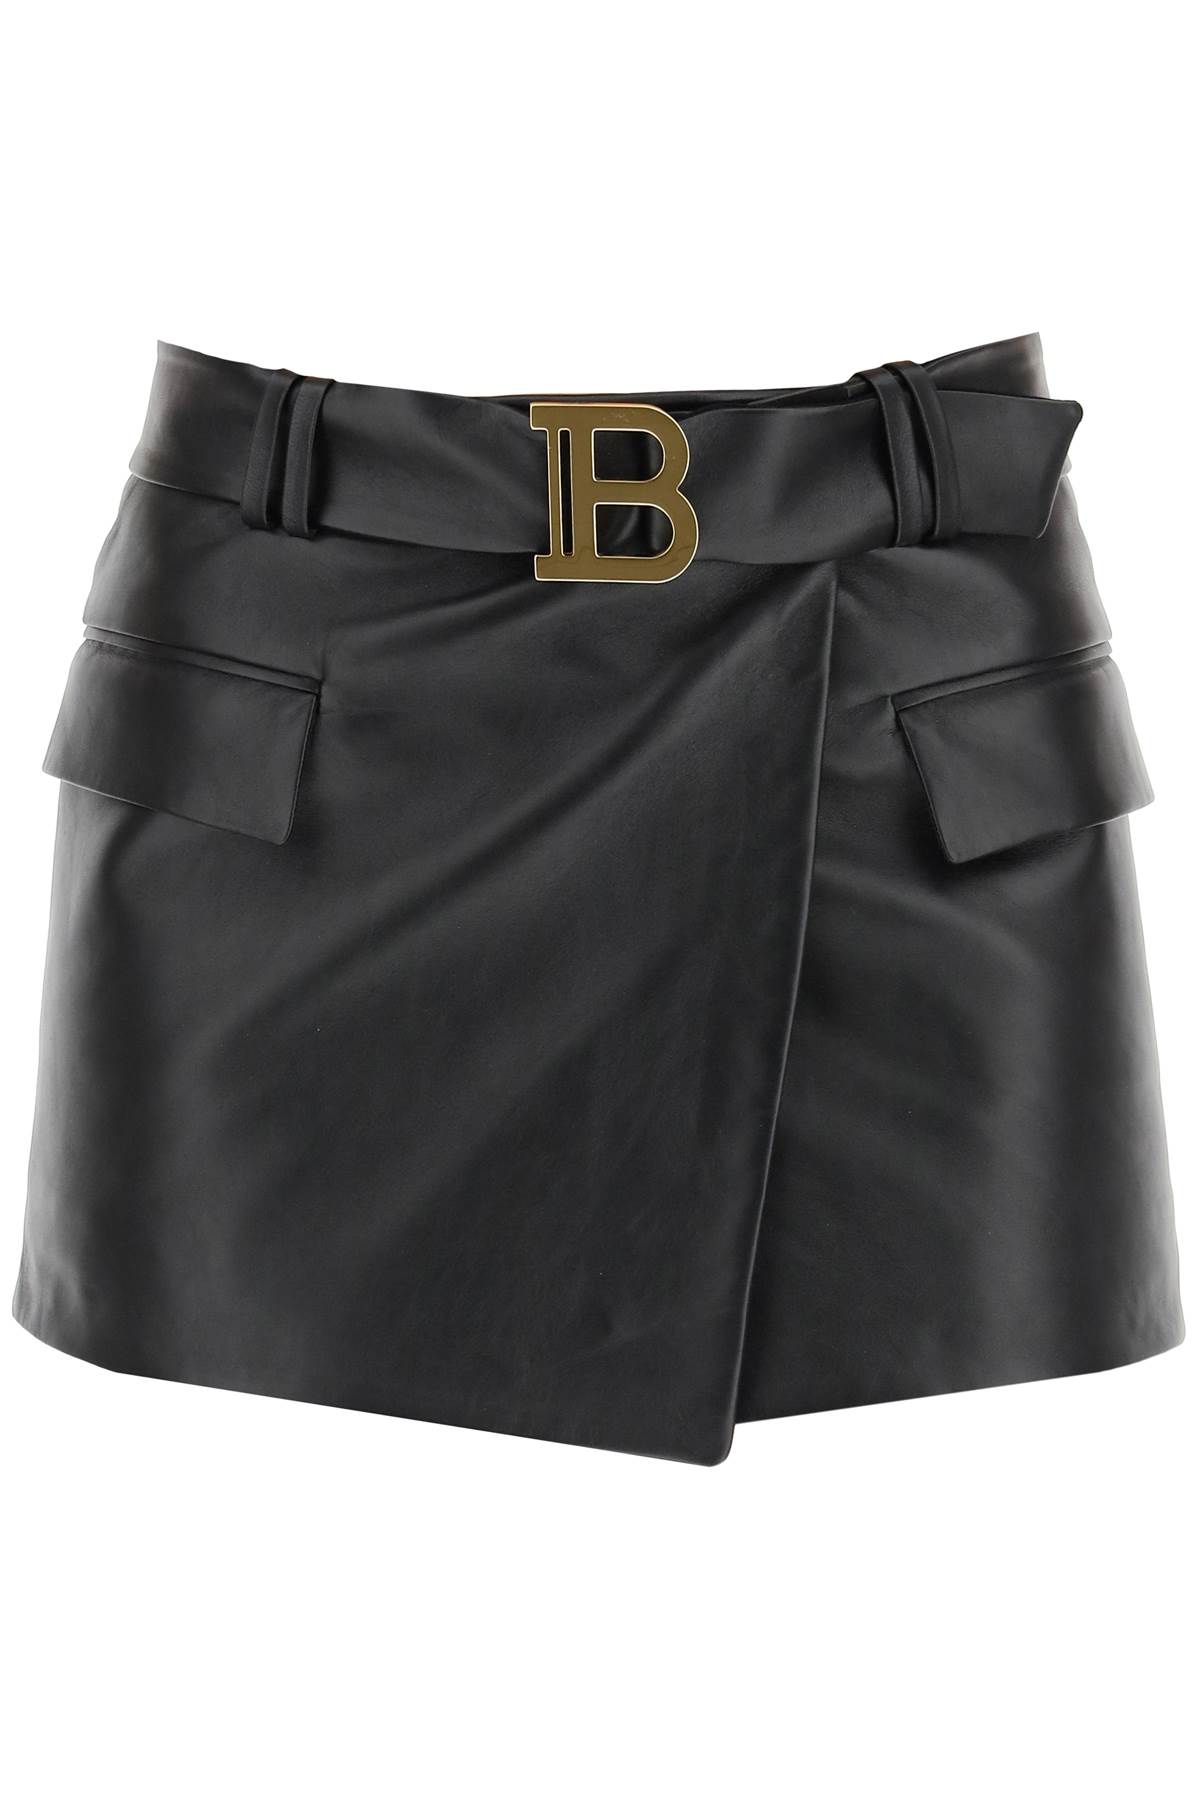 Balmain Leather Mini Skirt With B Logo Buckle